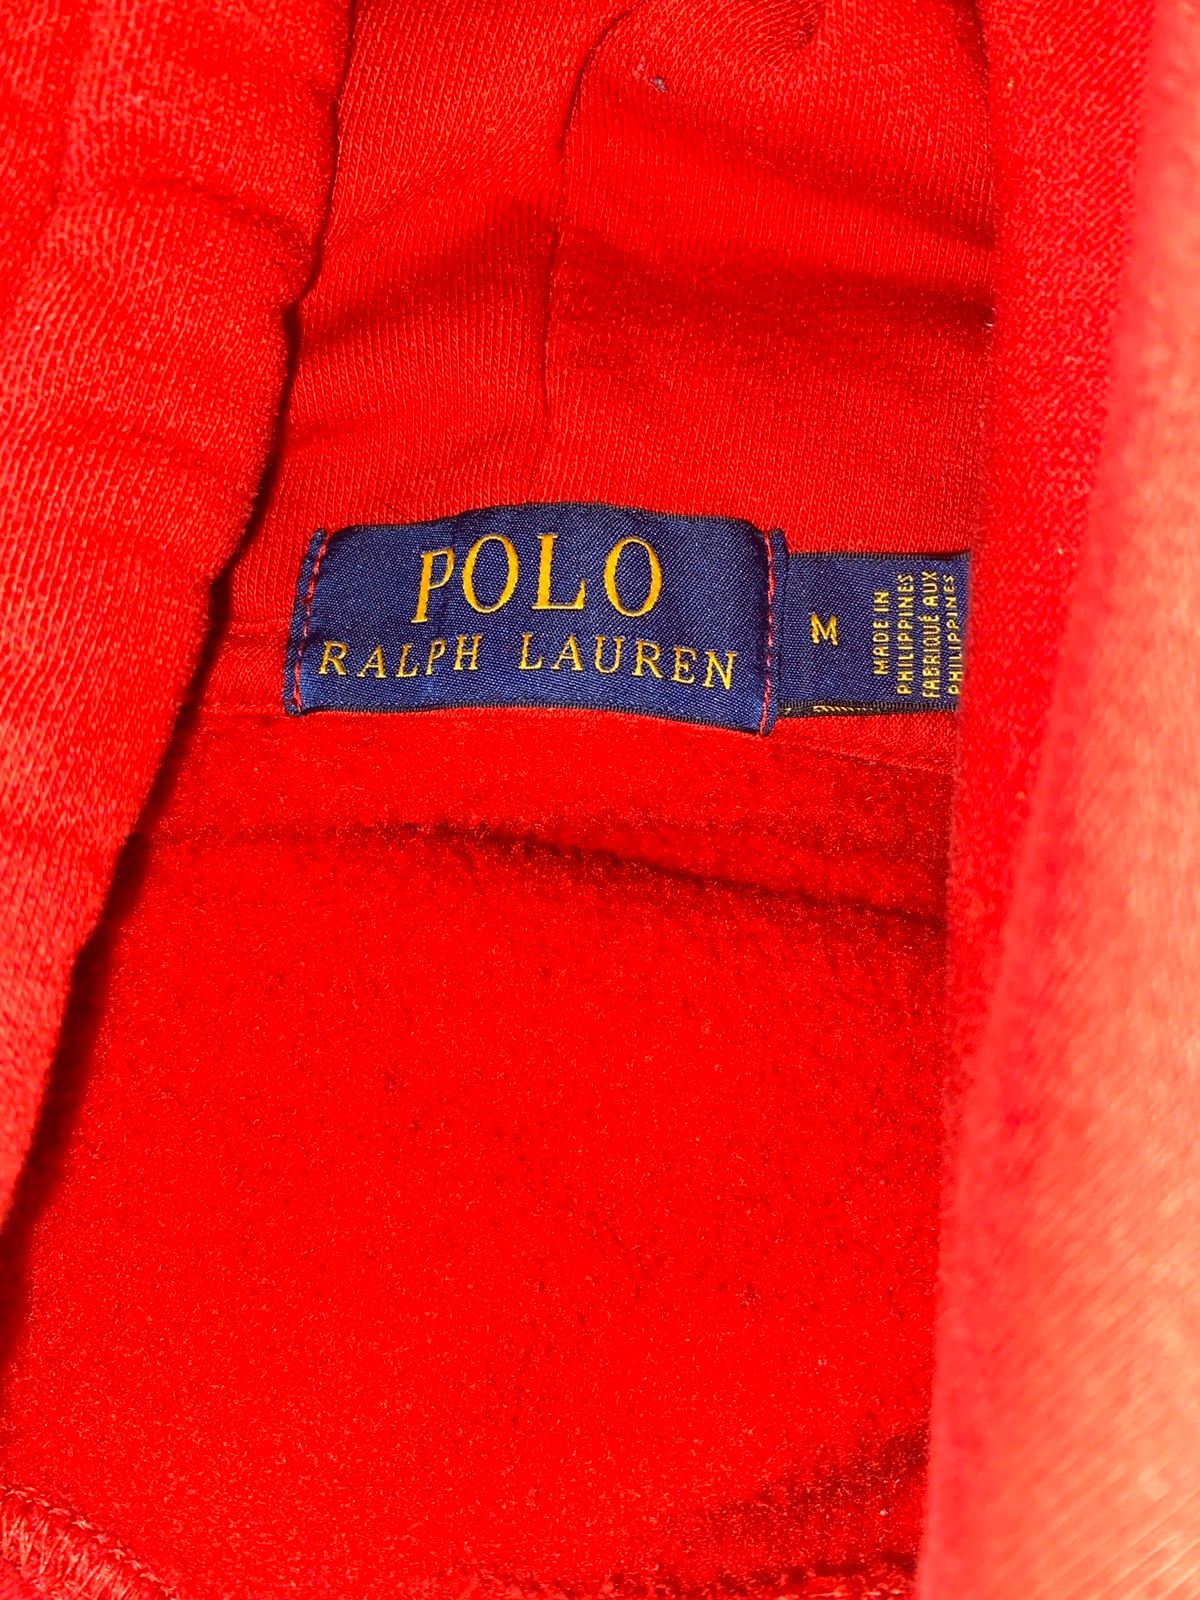 Polo Ralph Lauren Polo Ralph Lauren teddy bear hoodie Size US M / EU 48-50 / 2 - 4 Preview